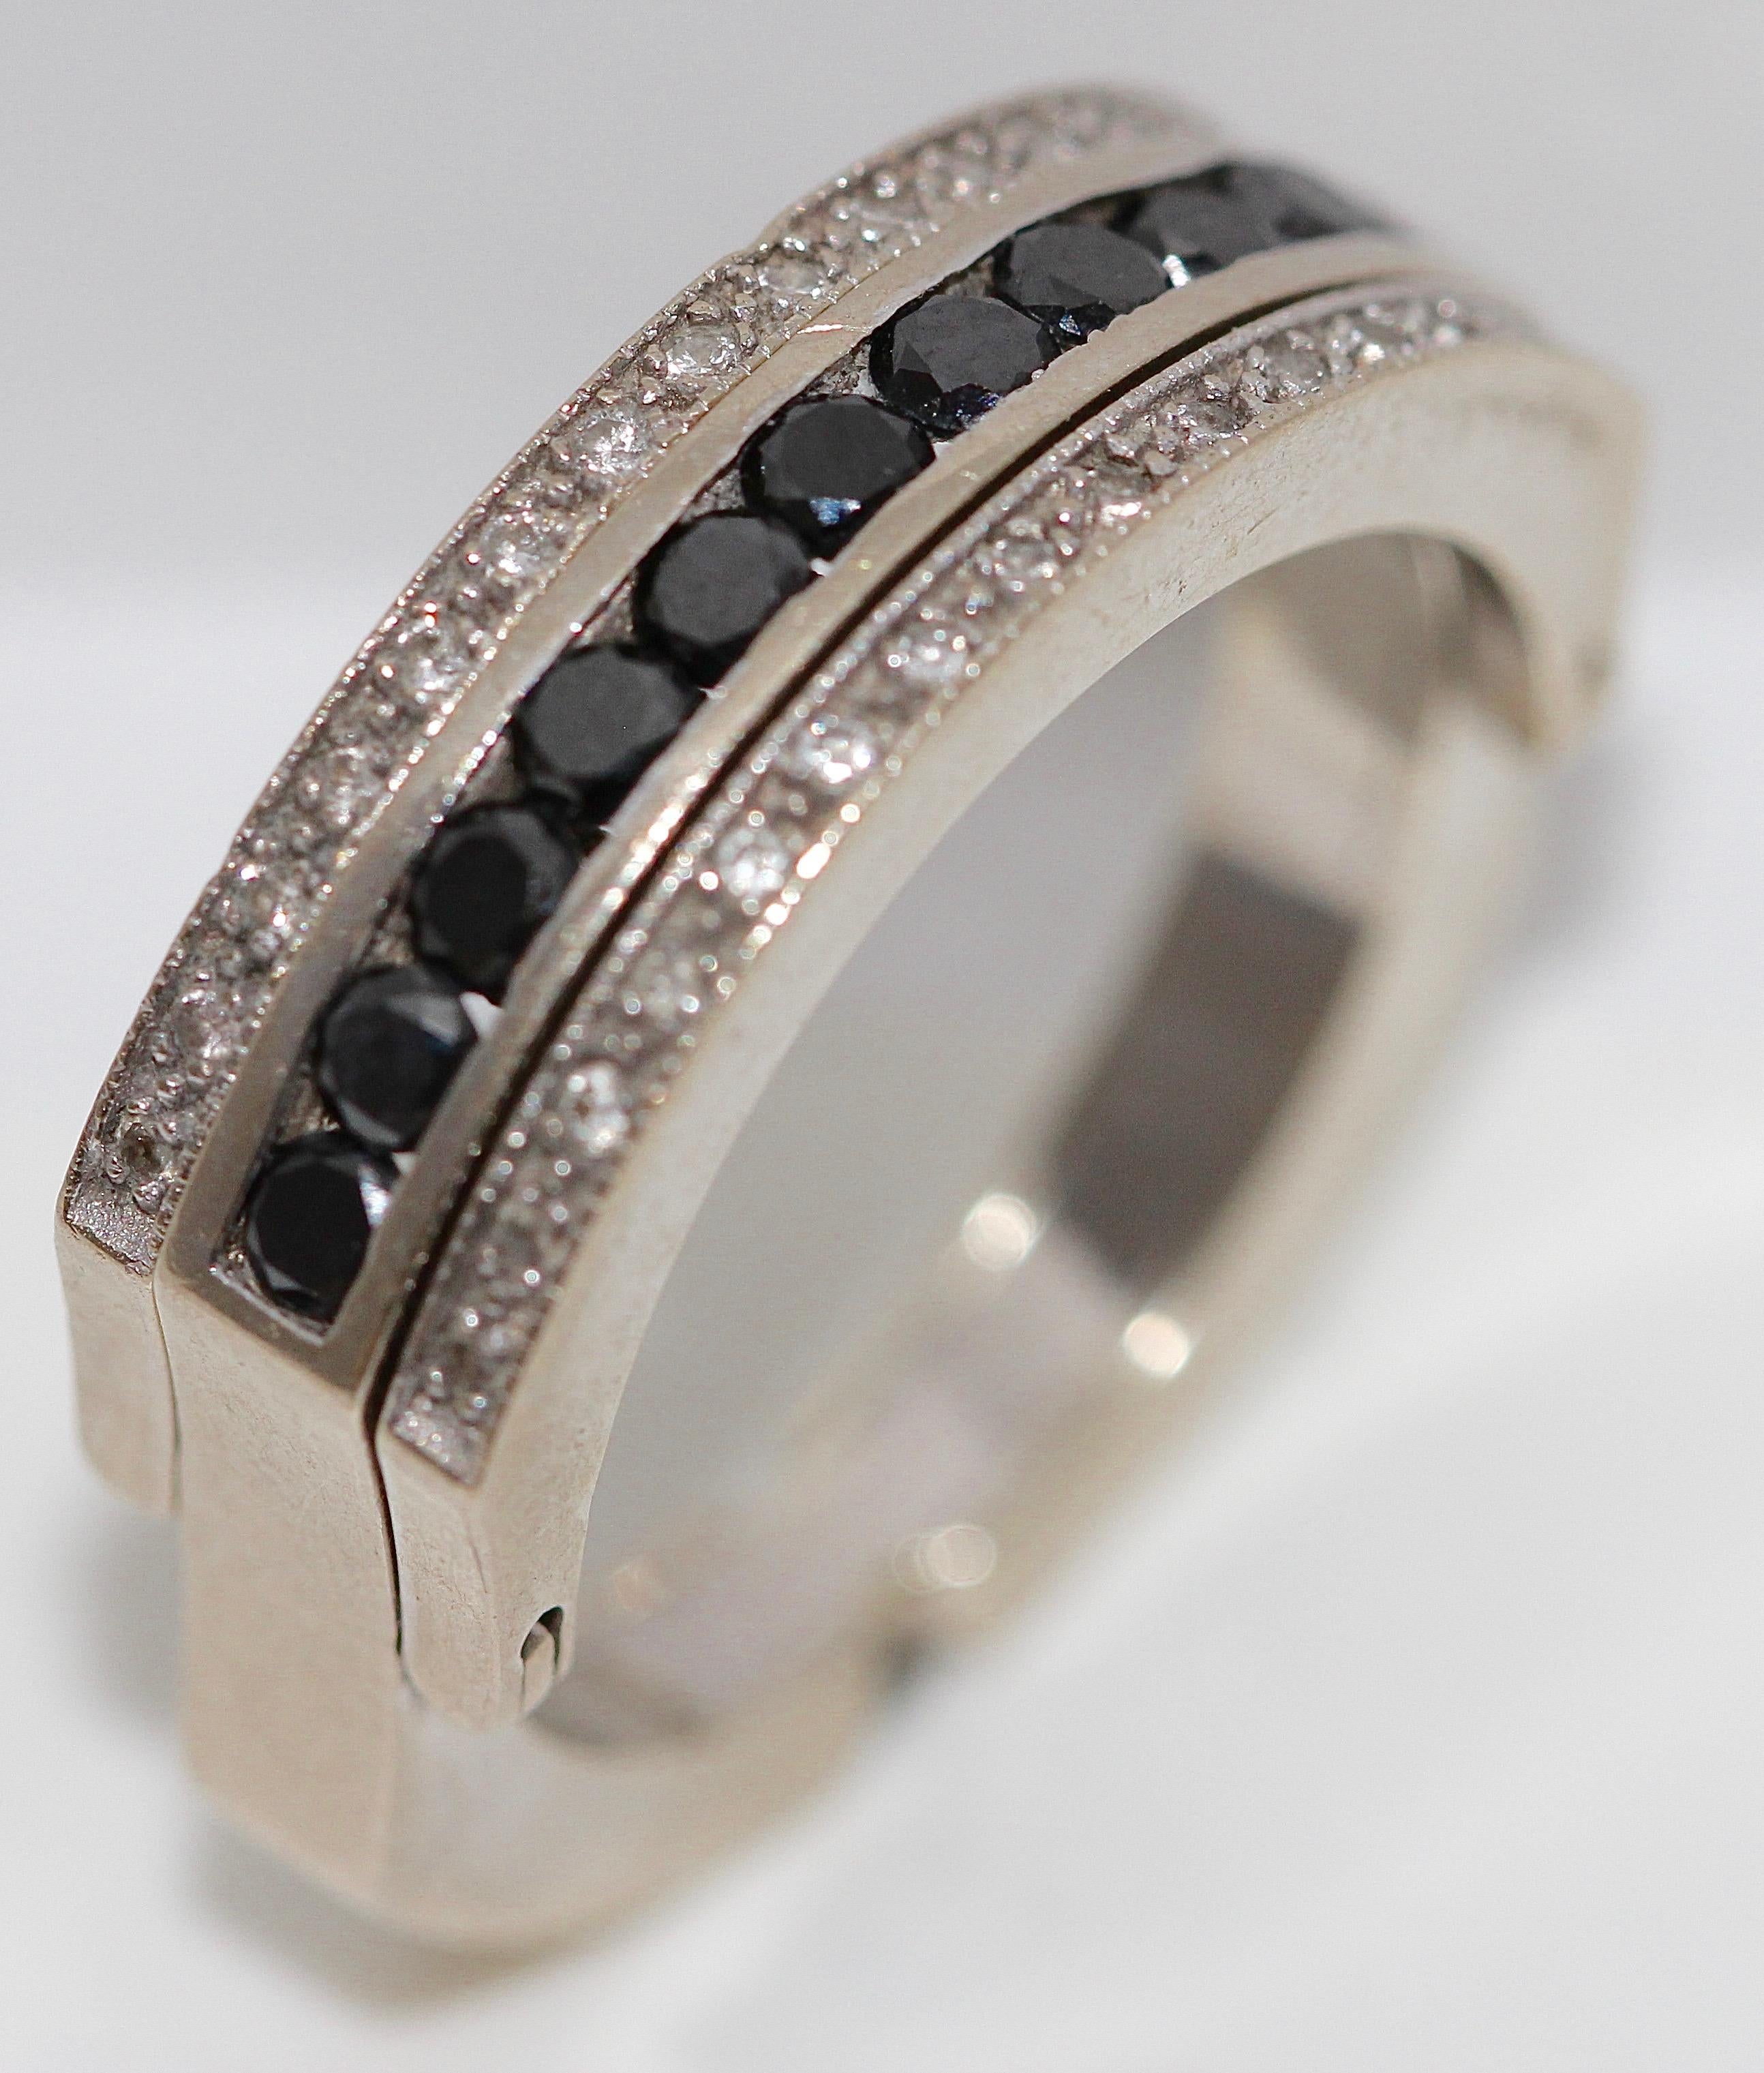 Eleganter und sehr modischer 18k Weißgold Eternity, Transformation, Memory Ring mit schwarzen und weißen Diamanten.

Innendurchmesser 19 mm.